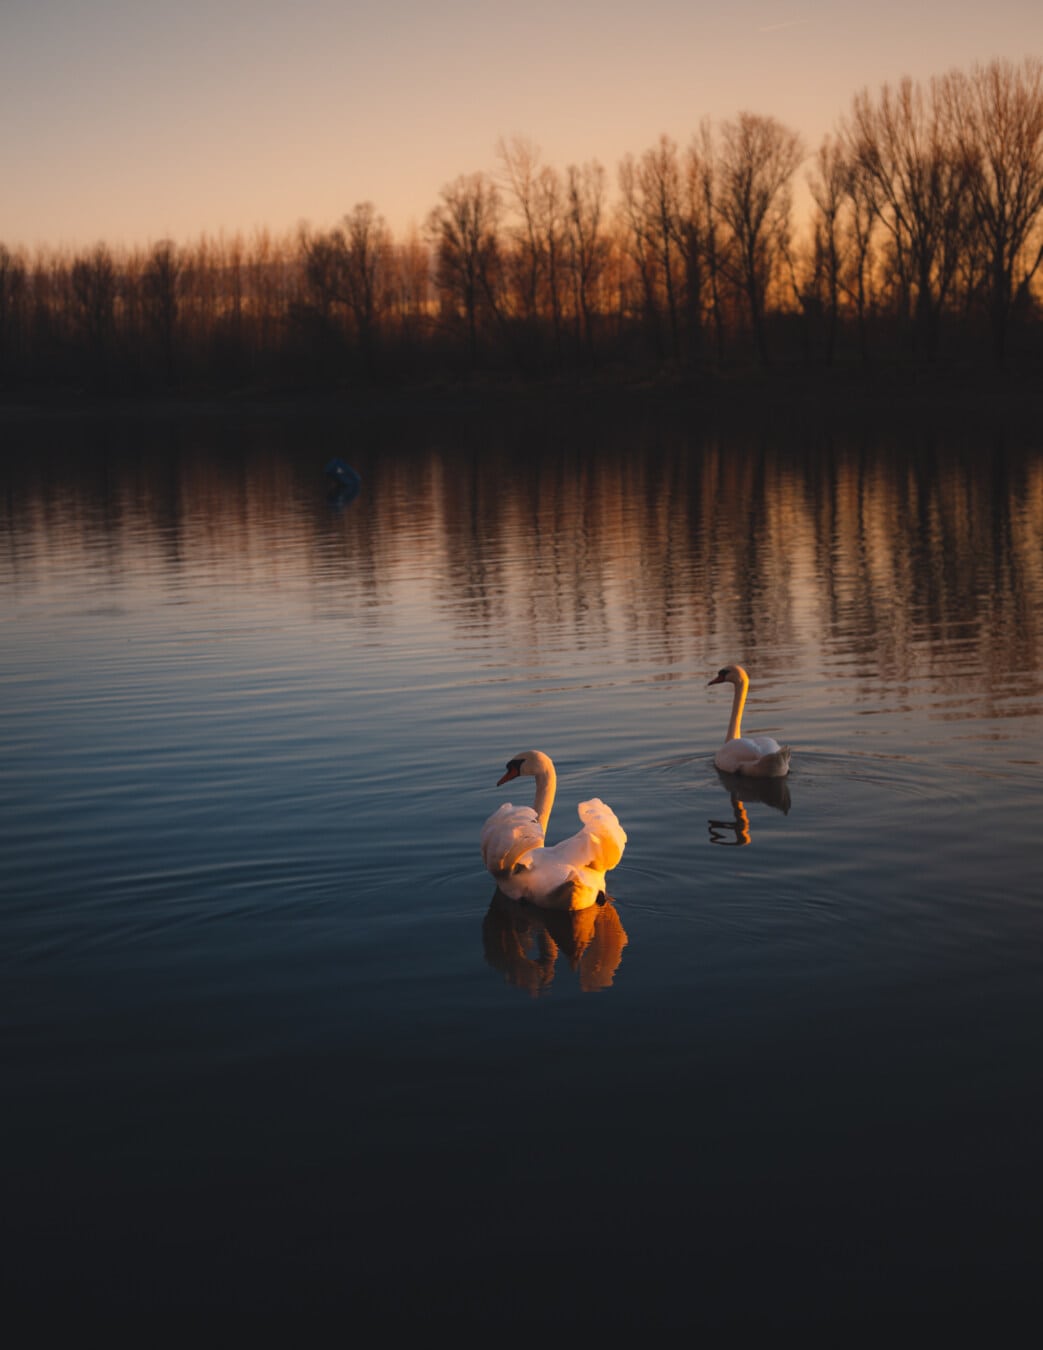 frumos, zori de zi, lebădă, păsări, înot, pe malul lacului, lacul, apa, reflecţie, pasăre